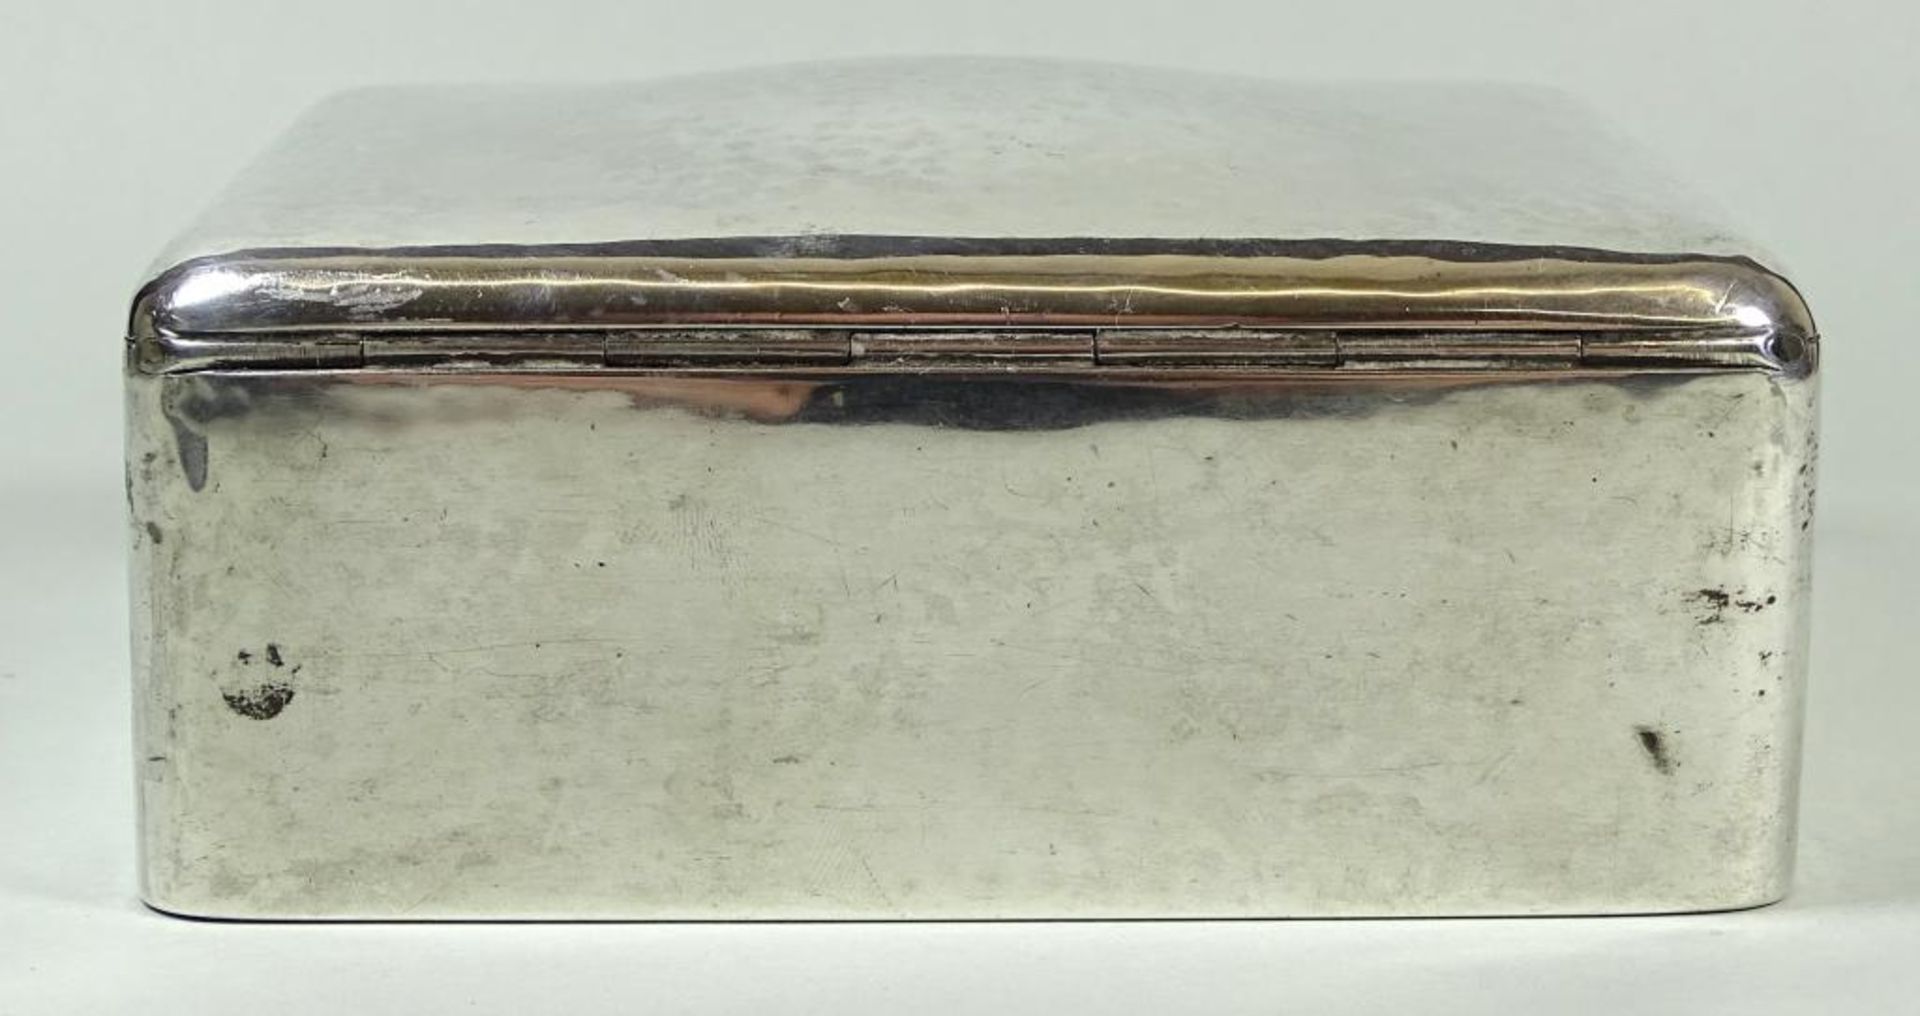 Zigaretten Dose von Evald Nielsen Dänemark,1927,330gr.,Hammerschlagdekor,H-4,5cm,11,5x9,2cm,1x Delle - Bild 6 aus 8